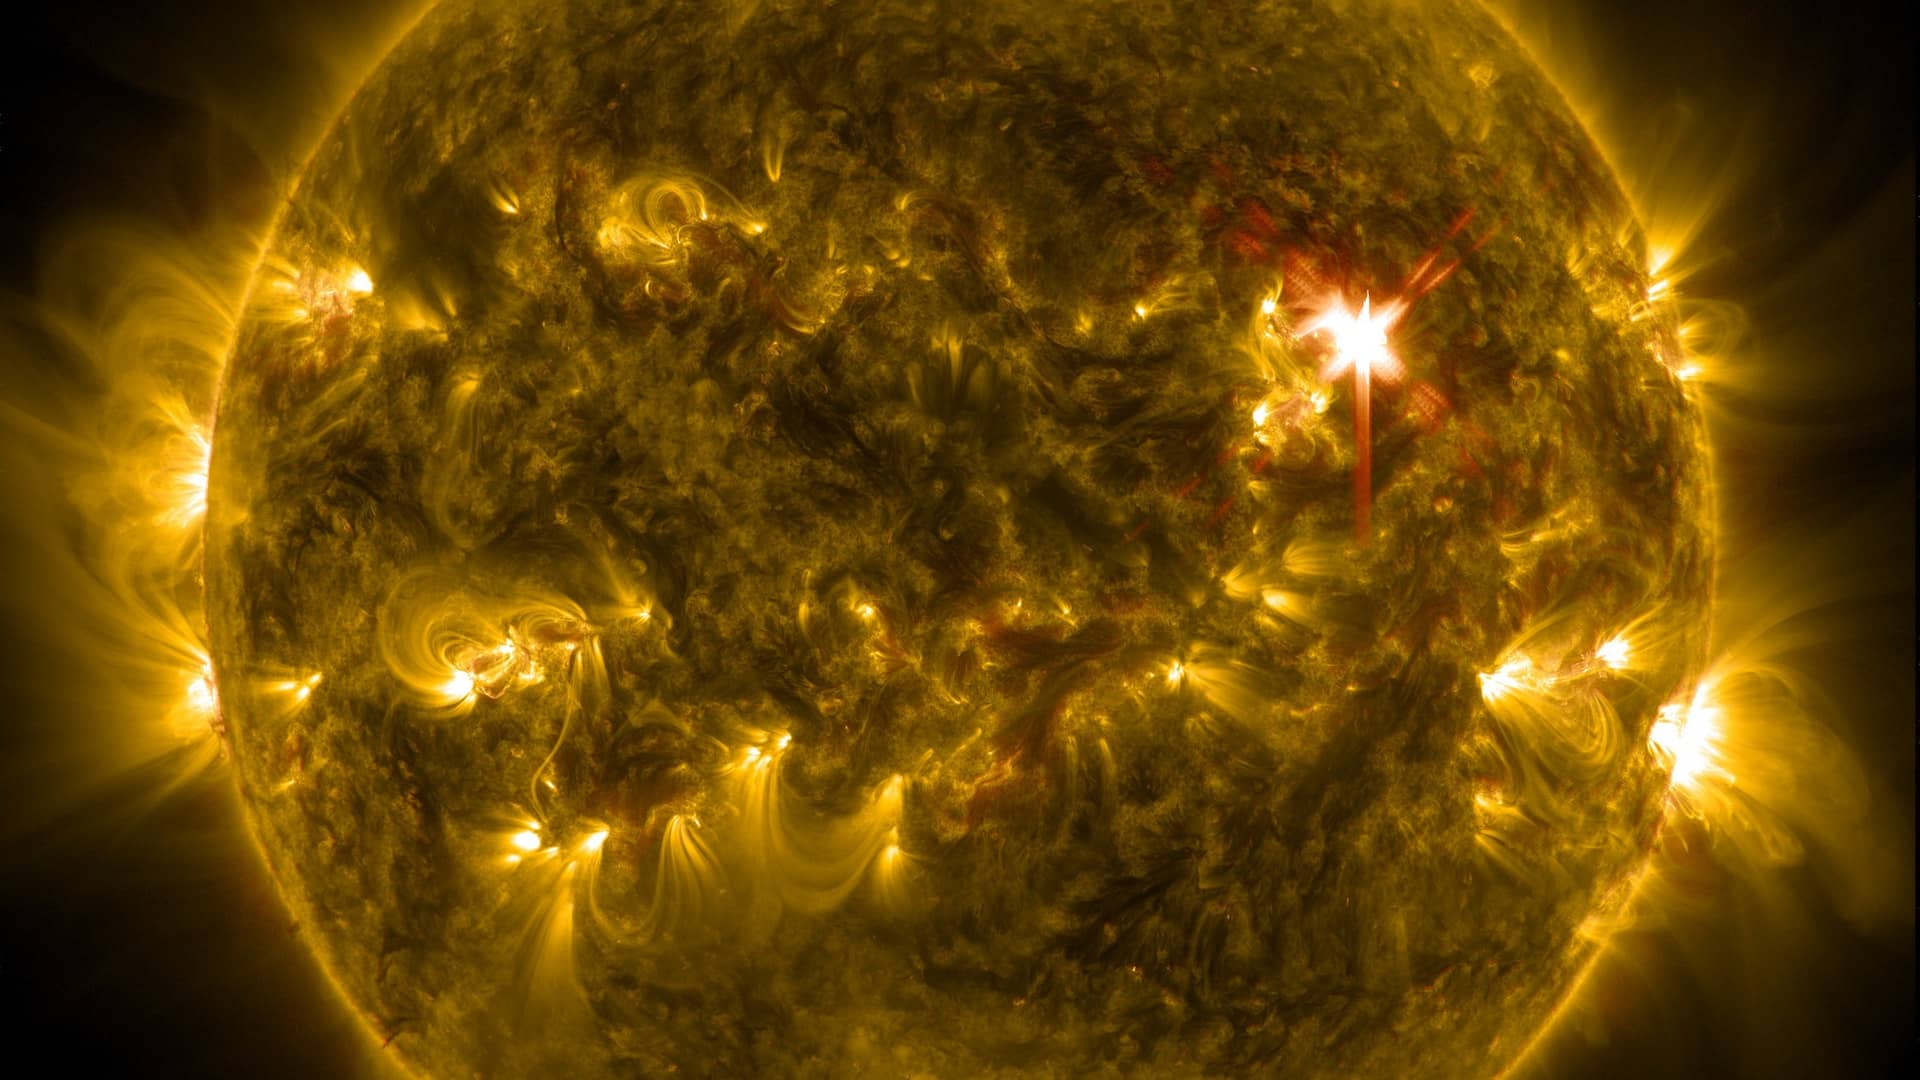 NASA celebrates major milestone of touching the Sun